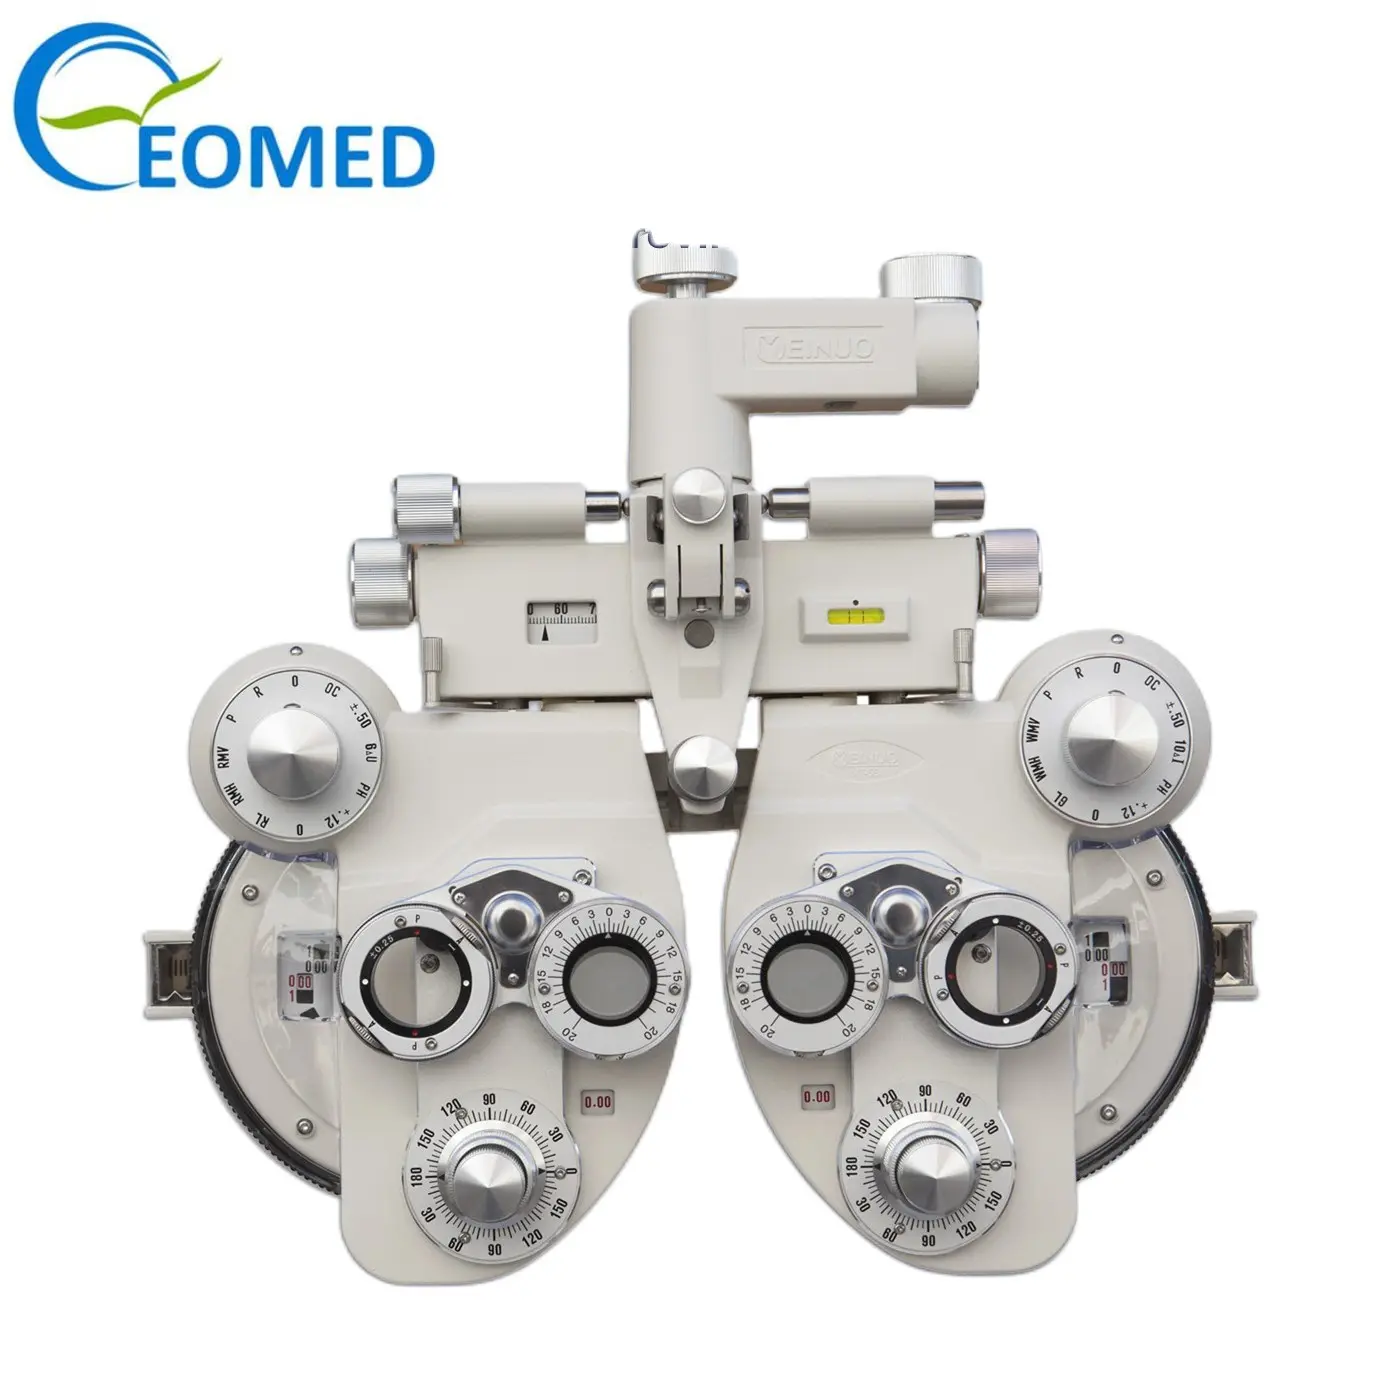 光学VT-5シリーズによる目の検出には、優れた眼科検眼蓄音機が使用されています